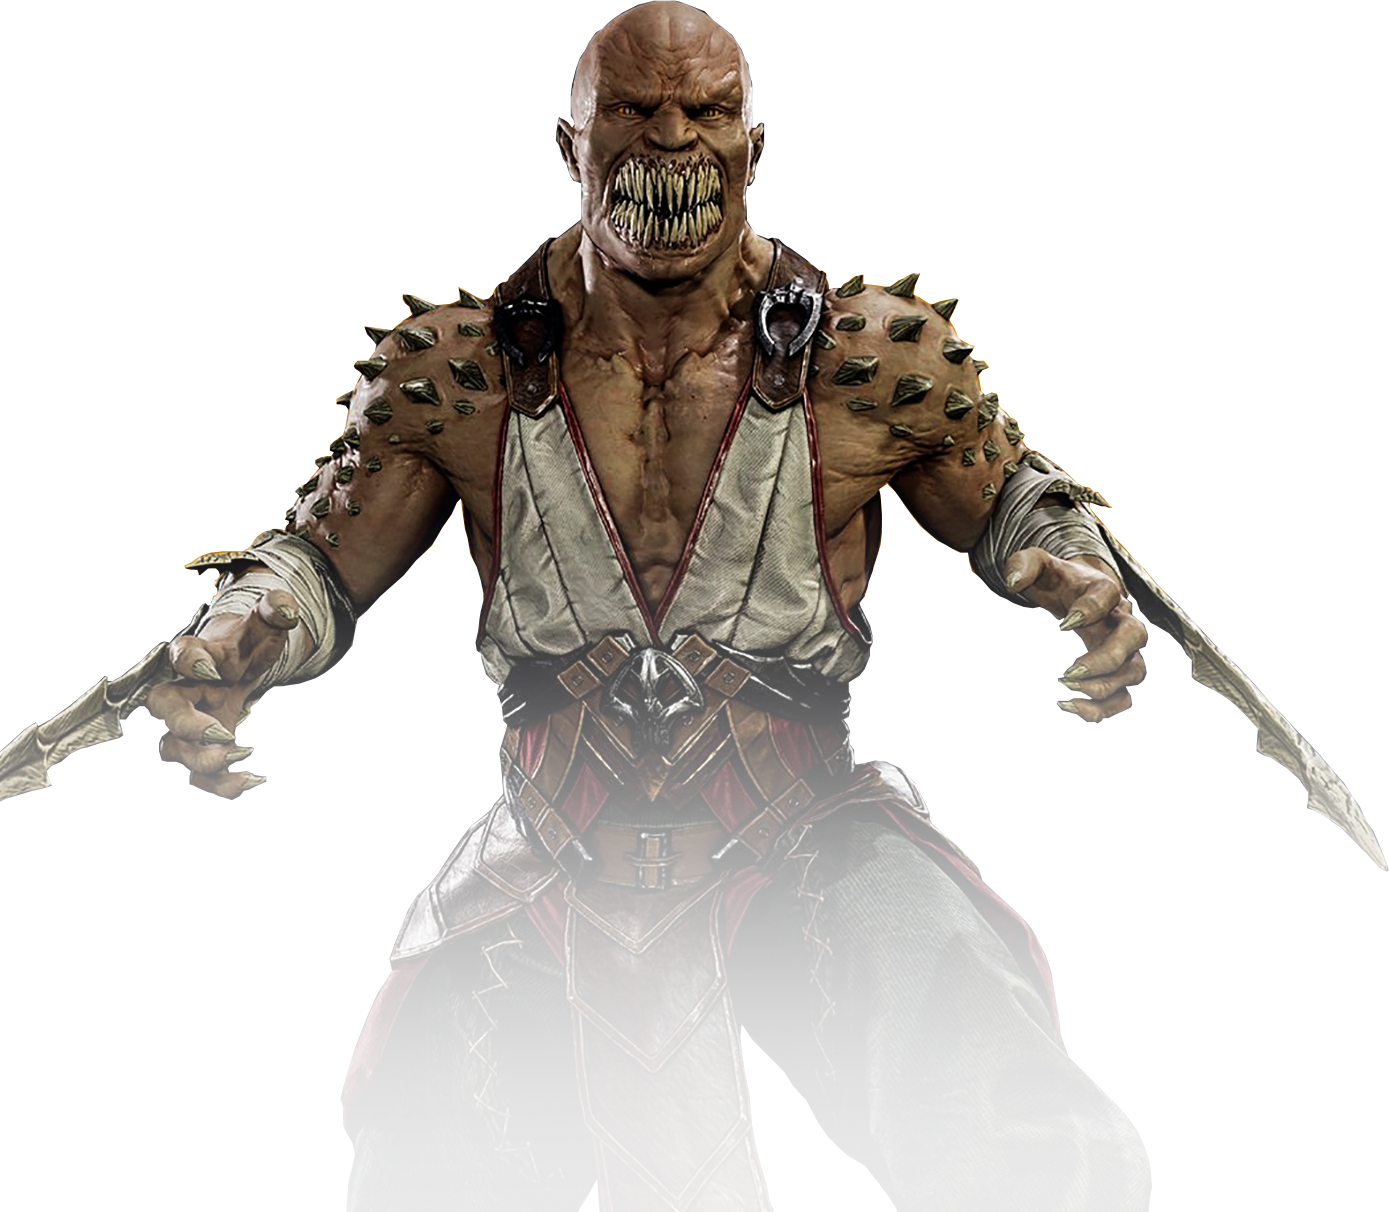 A Origem de Baraka (Mortal Kombat) - HISTÓRIA COMPLETA 